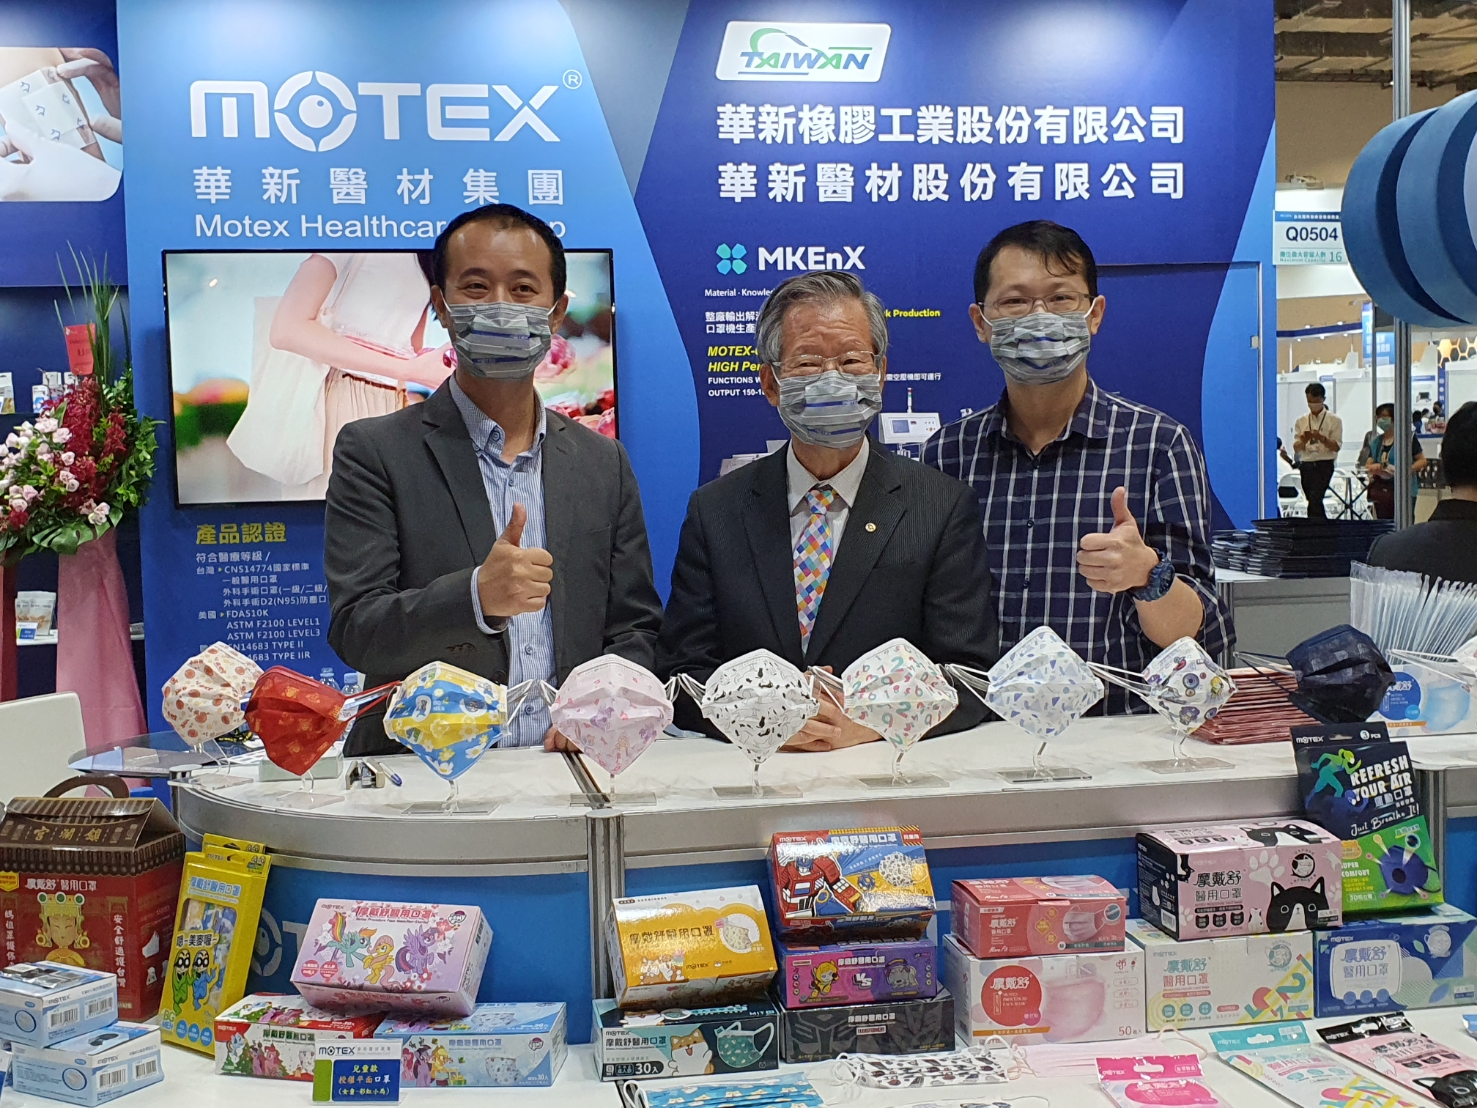 MOTEX at Medical Taiwan Hybrid